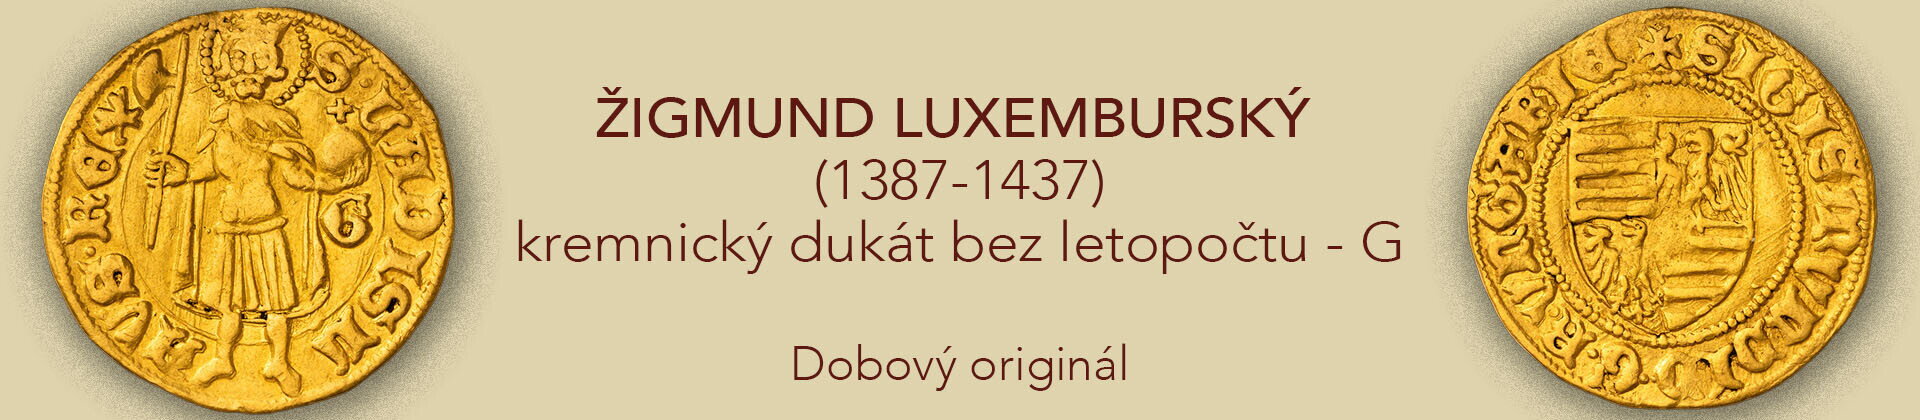 Zigmund Luxembursky G dukát dobový originál